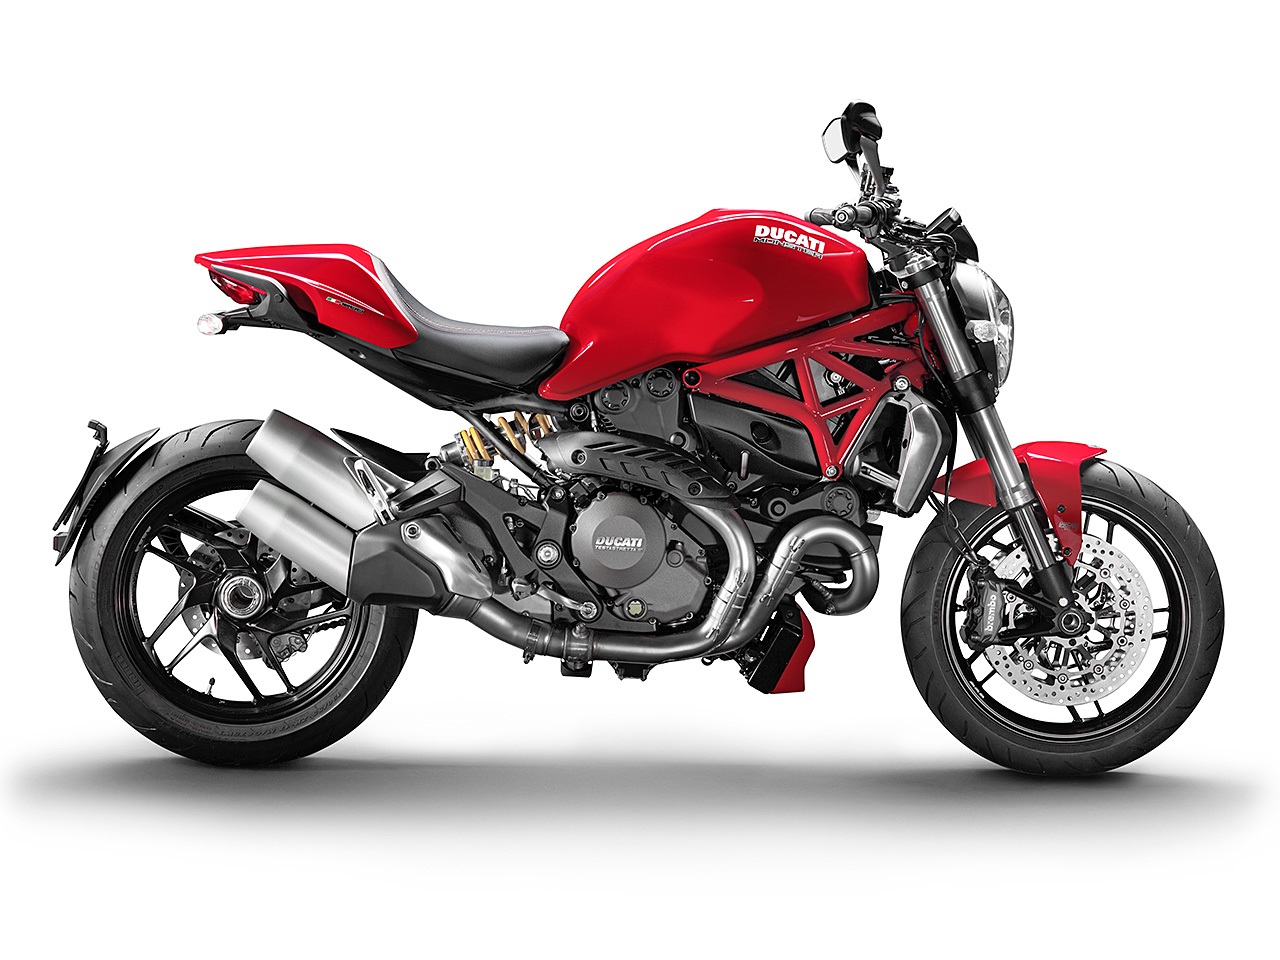 Nova Ducati Monster 1200 chega por R$ 64.900